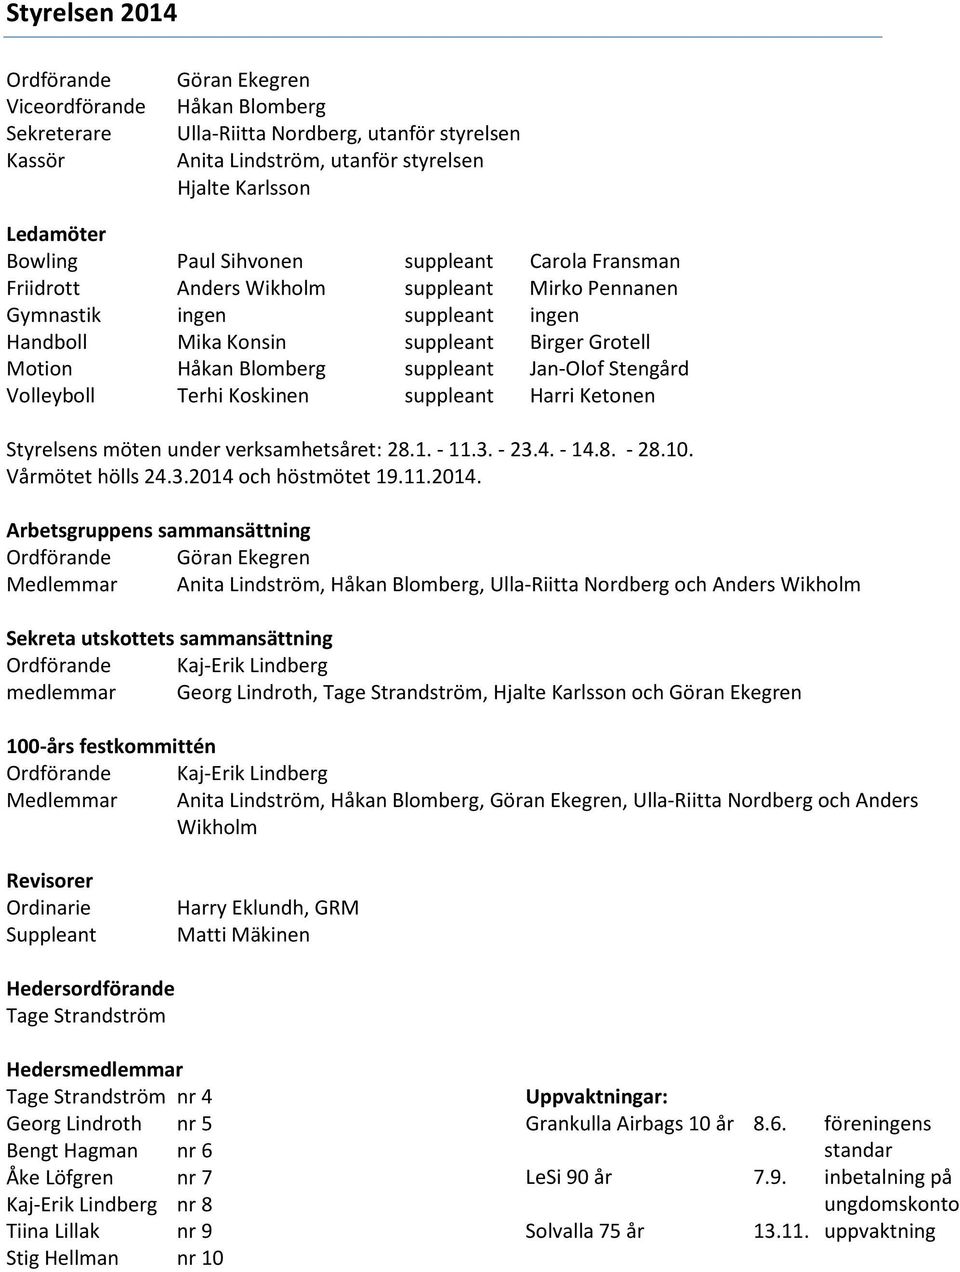 Jan-Olof Stengård Volleyboll Terhi Koskinen suppleant Harri Ketonen Styrelsens möten under verksamhetsåret: 28.1. - 11.3. - 23.4. - 14.8. - 28.10. Vårmötet hölls 24.3.2014 